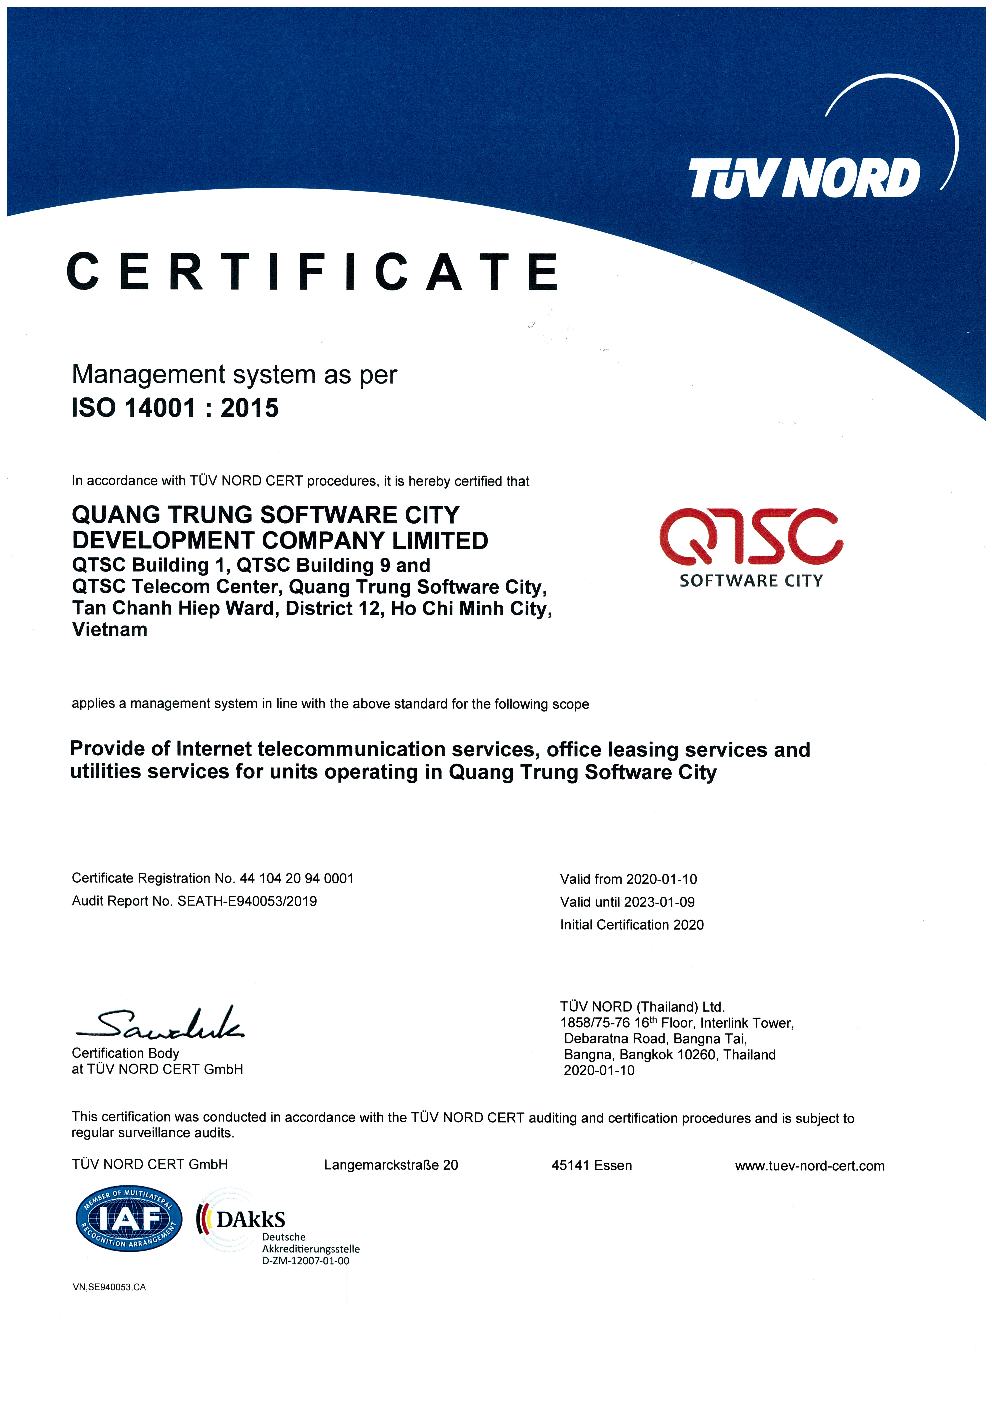 TUV Nord Certは、QTSCの環境管理システムISO 14001：2015の基準を満たすことを証明しました。